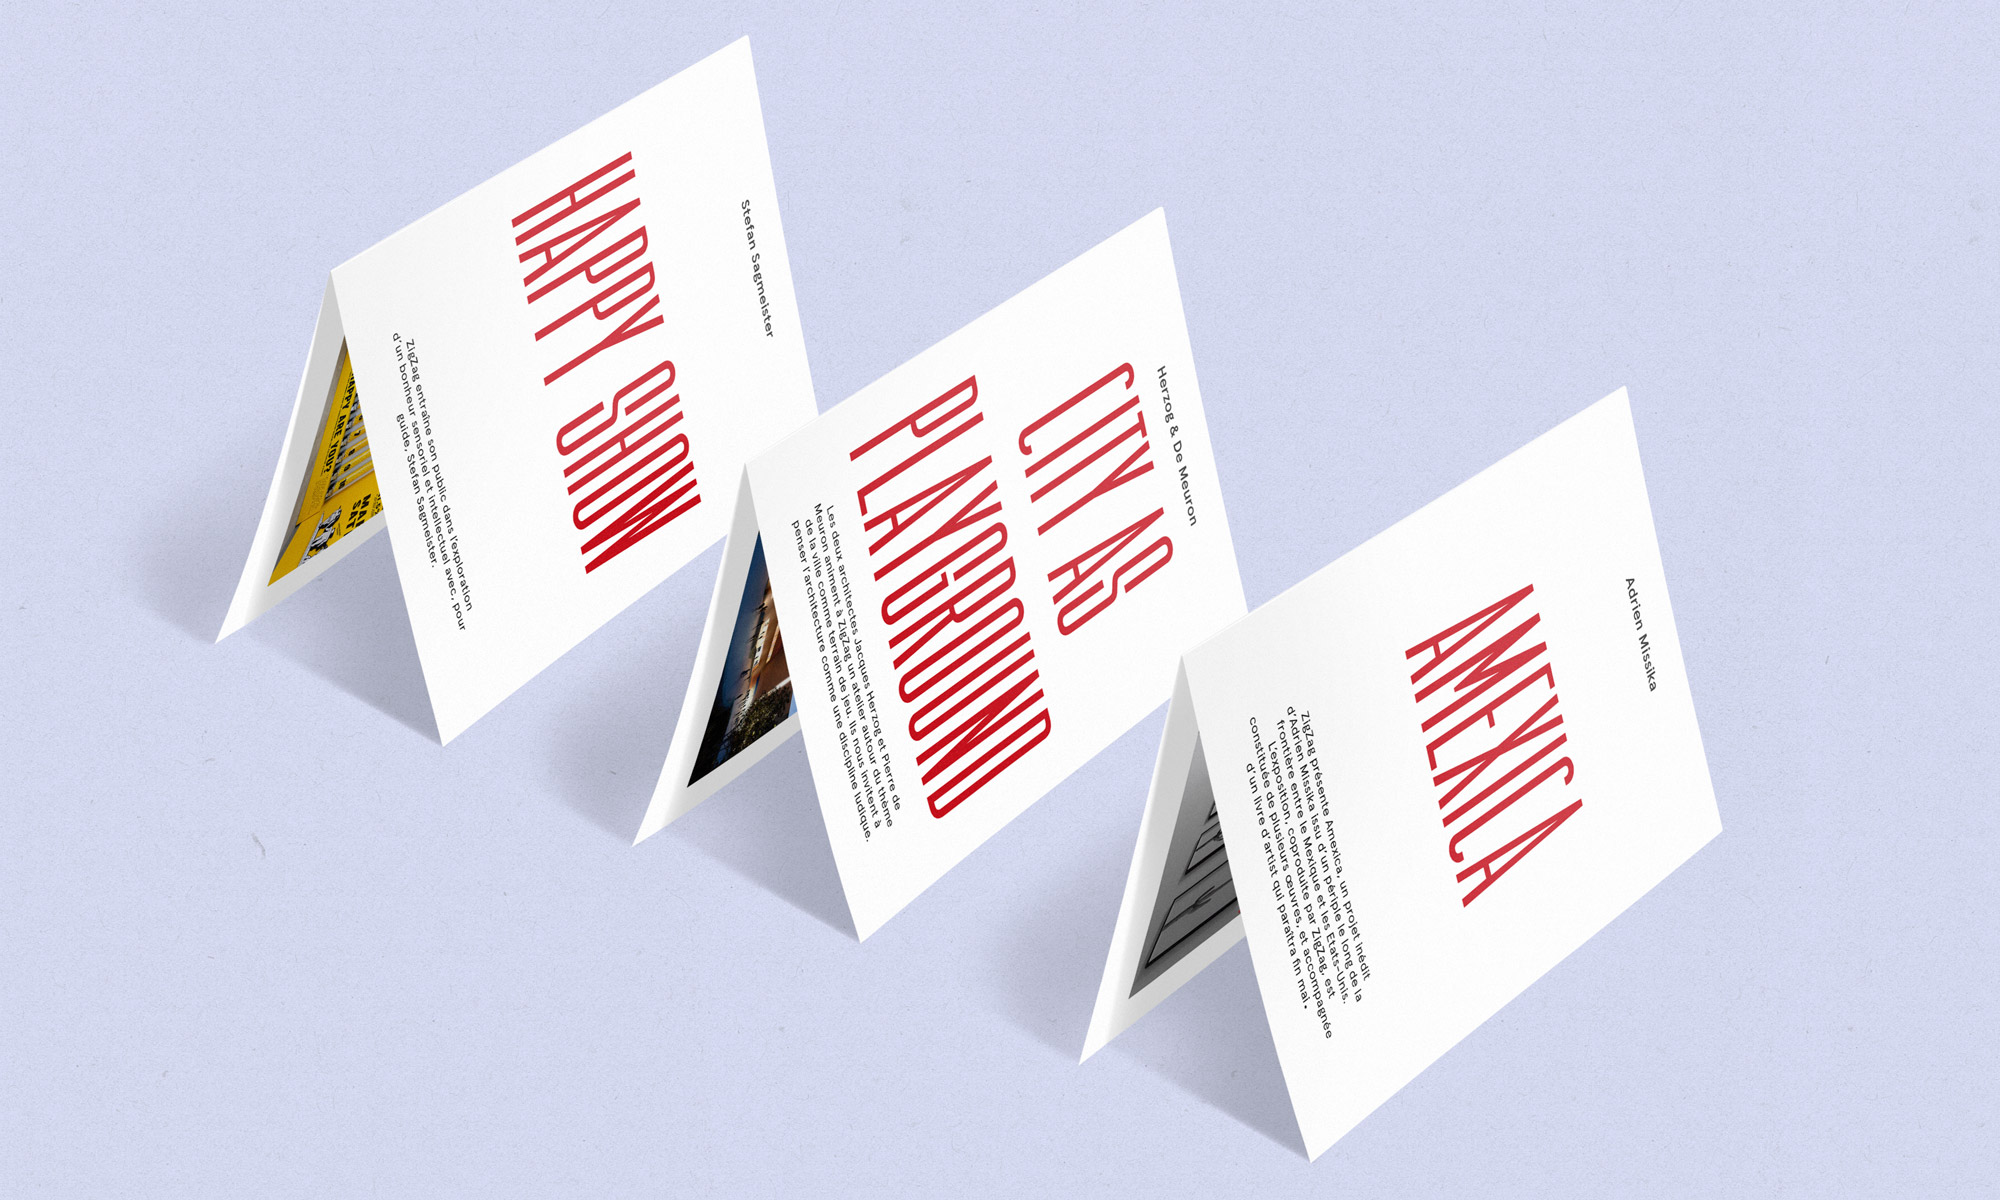 Petites brochures pour l'identité visuelle de ZigZag.
Réalisé par Au-delà studio.
Aloïs Ancenay 